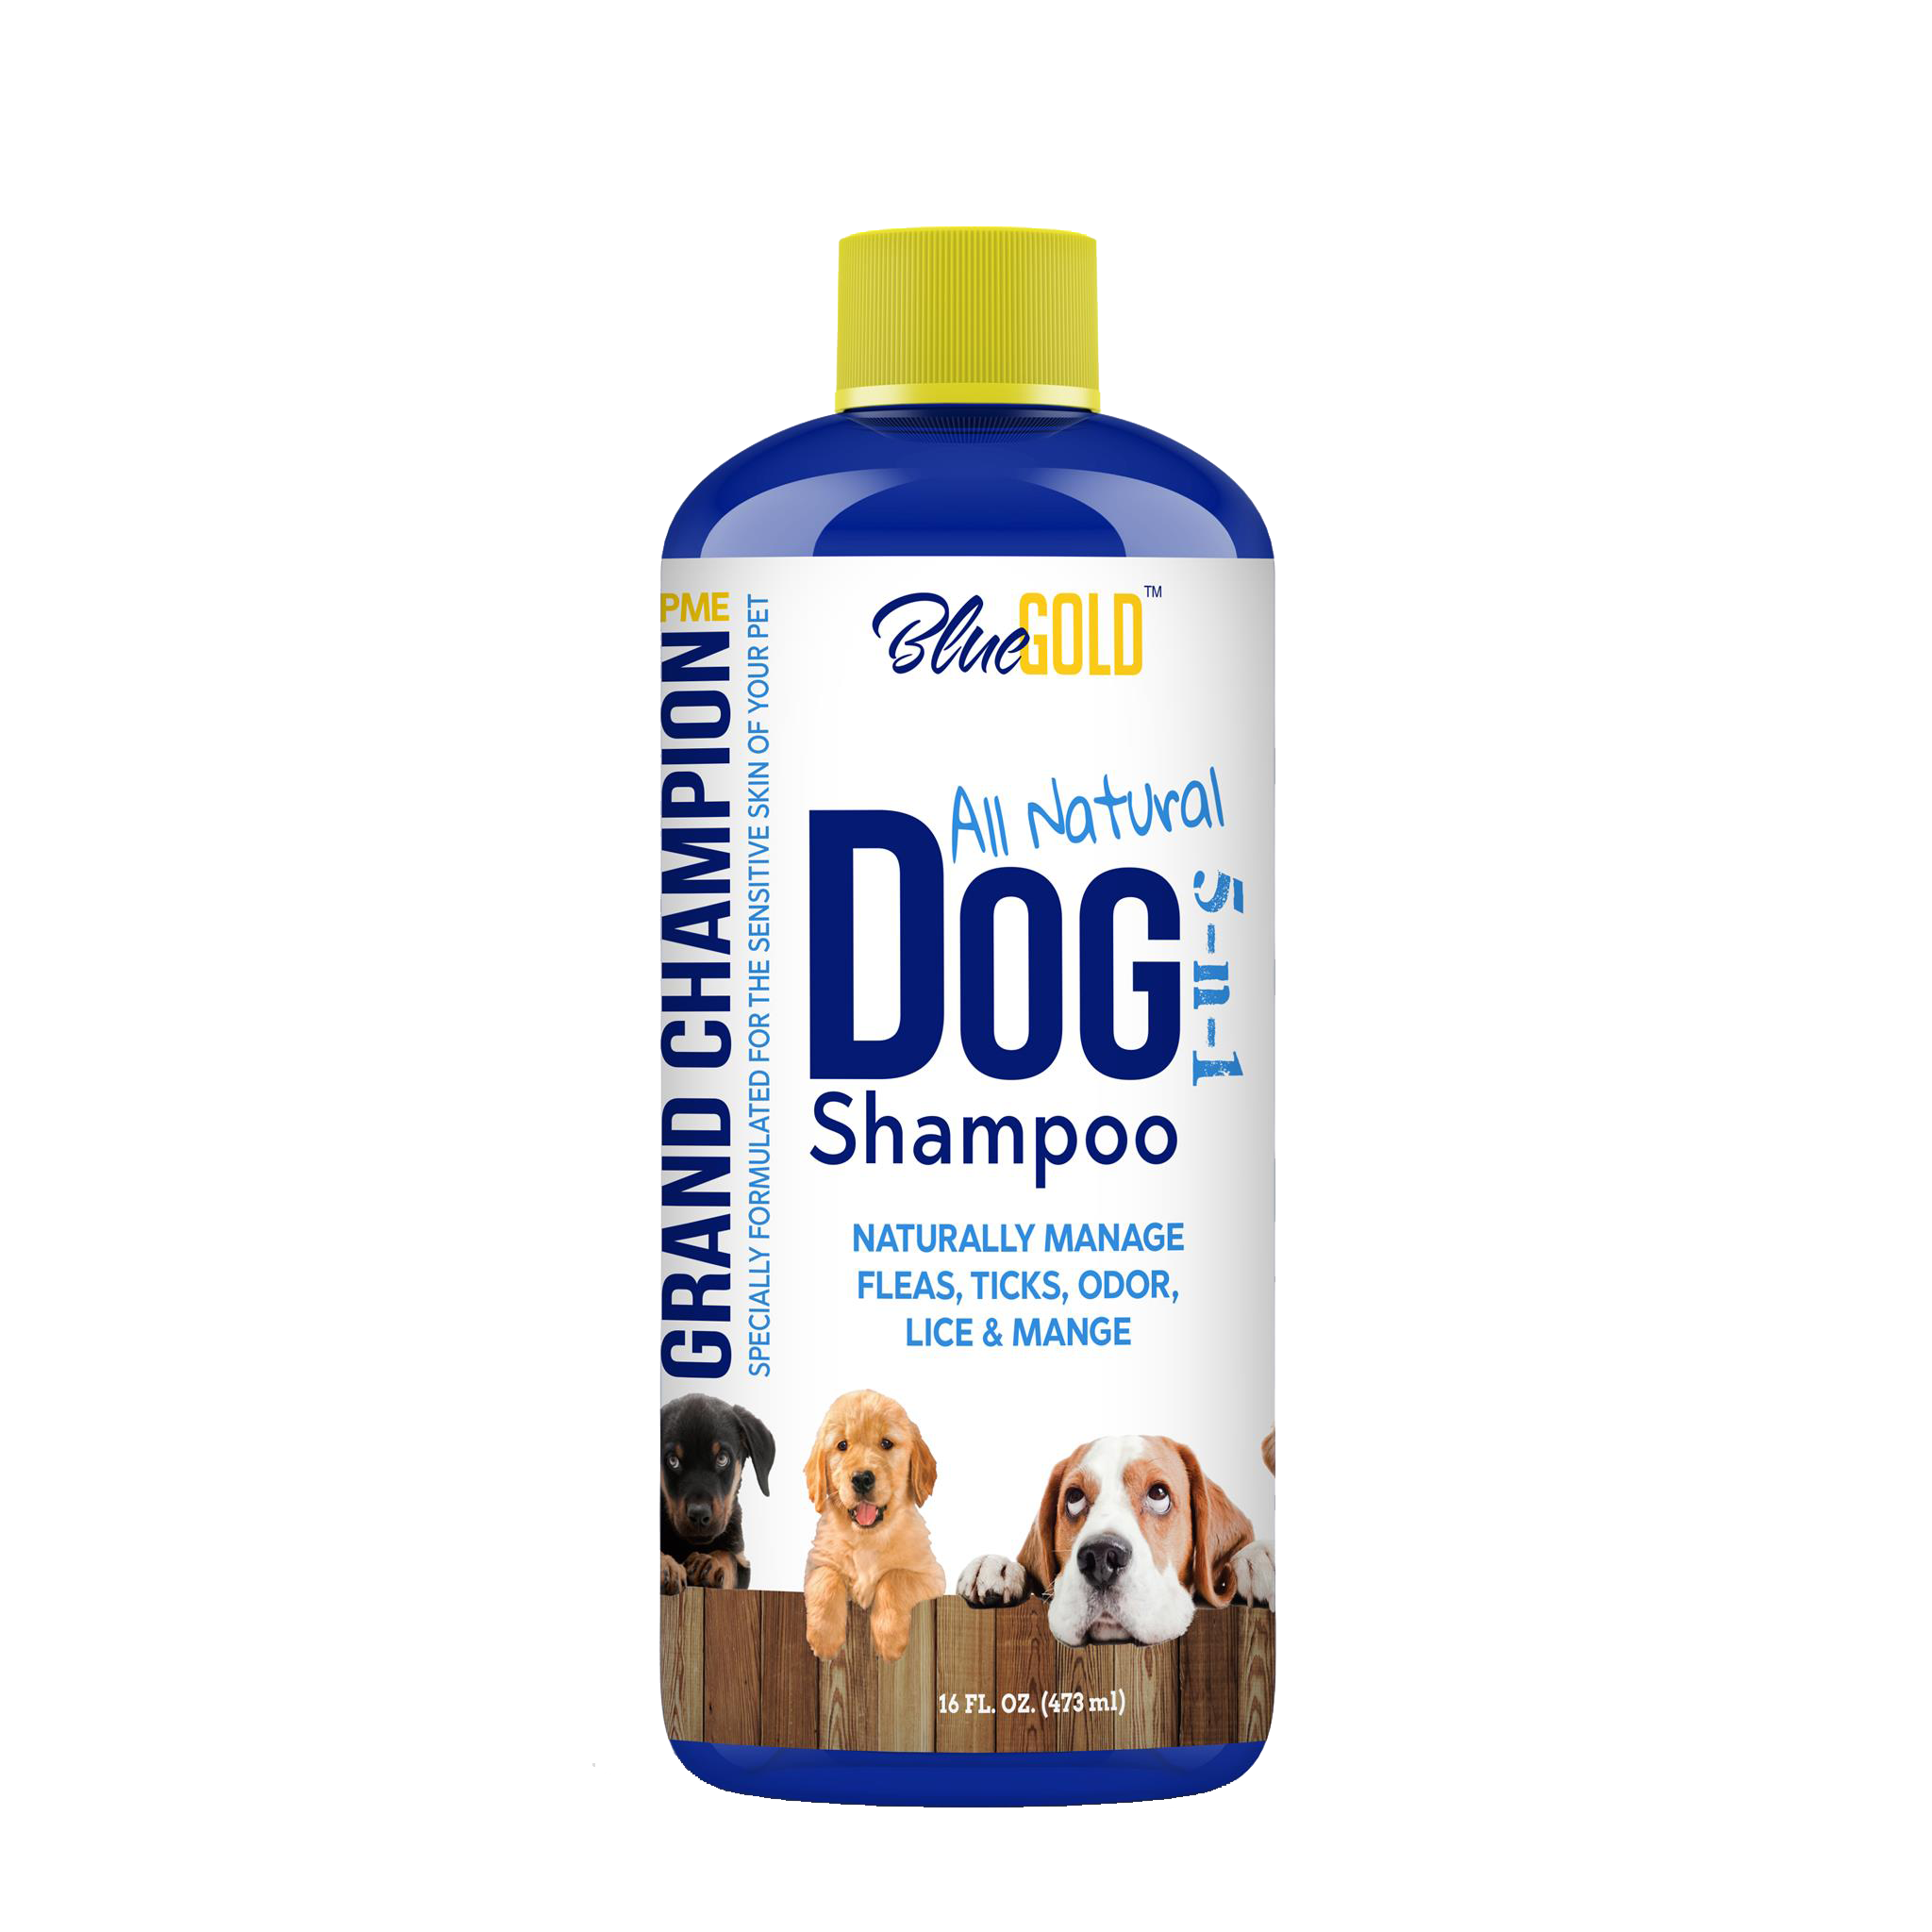 High End Dog Shampoo